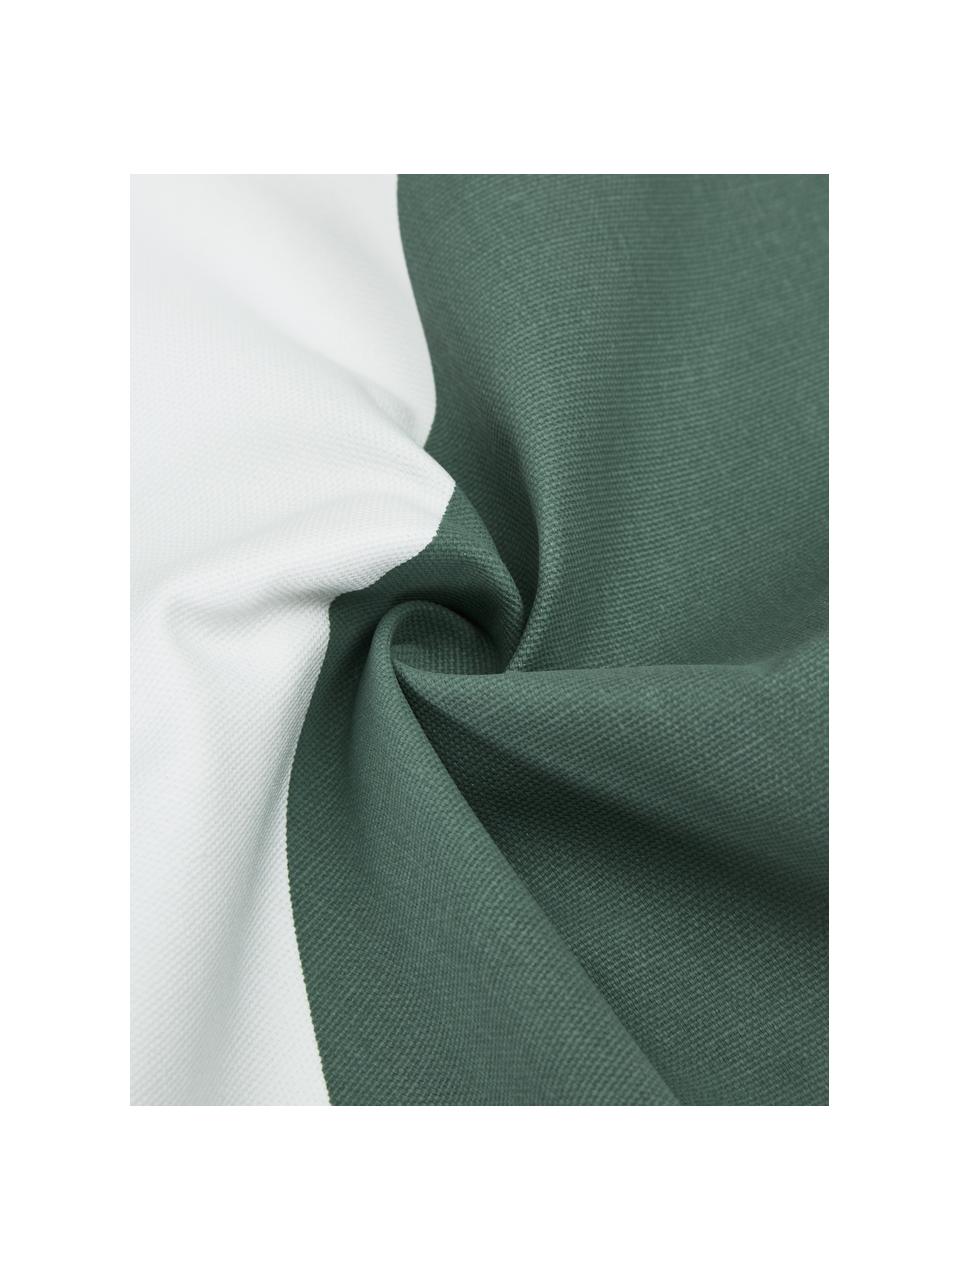 Housse de coussin rectangulaire blanc vert Ren, 100 % coton, Blanc, vert sauge, larg. 30 x long. 50 cm